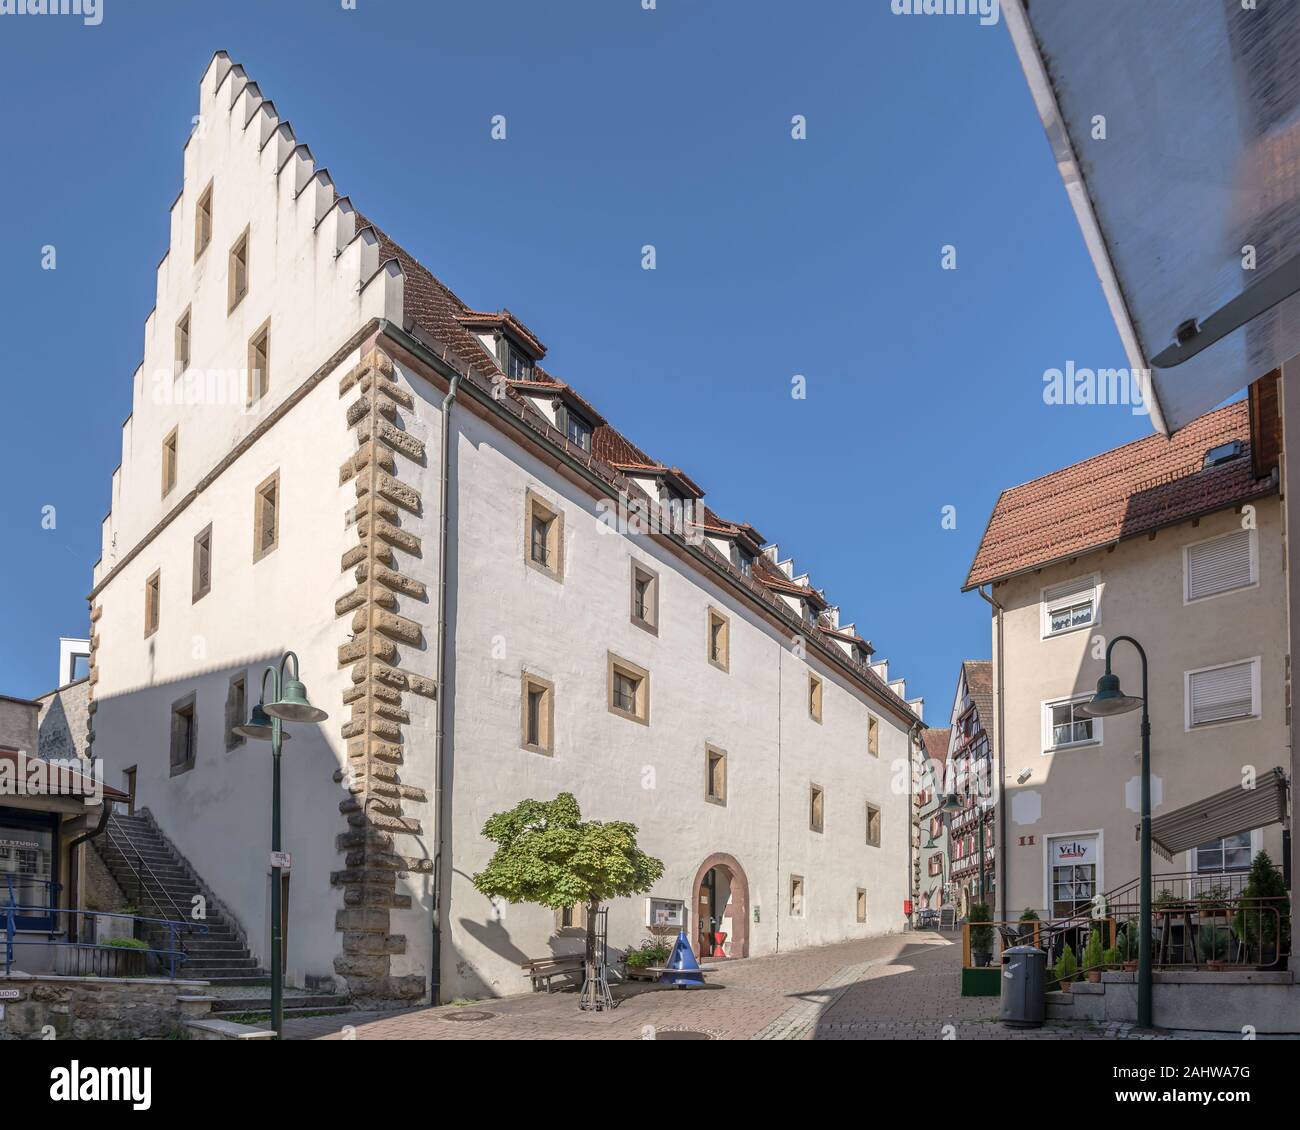 HORB AM NECKAR, Deutschland - 15. September 2019: Stadtbild von touristischen historische Städtchen mit steil bergauf Straße unter den alten traditionellen Gebäuden, s Stockfoto